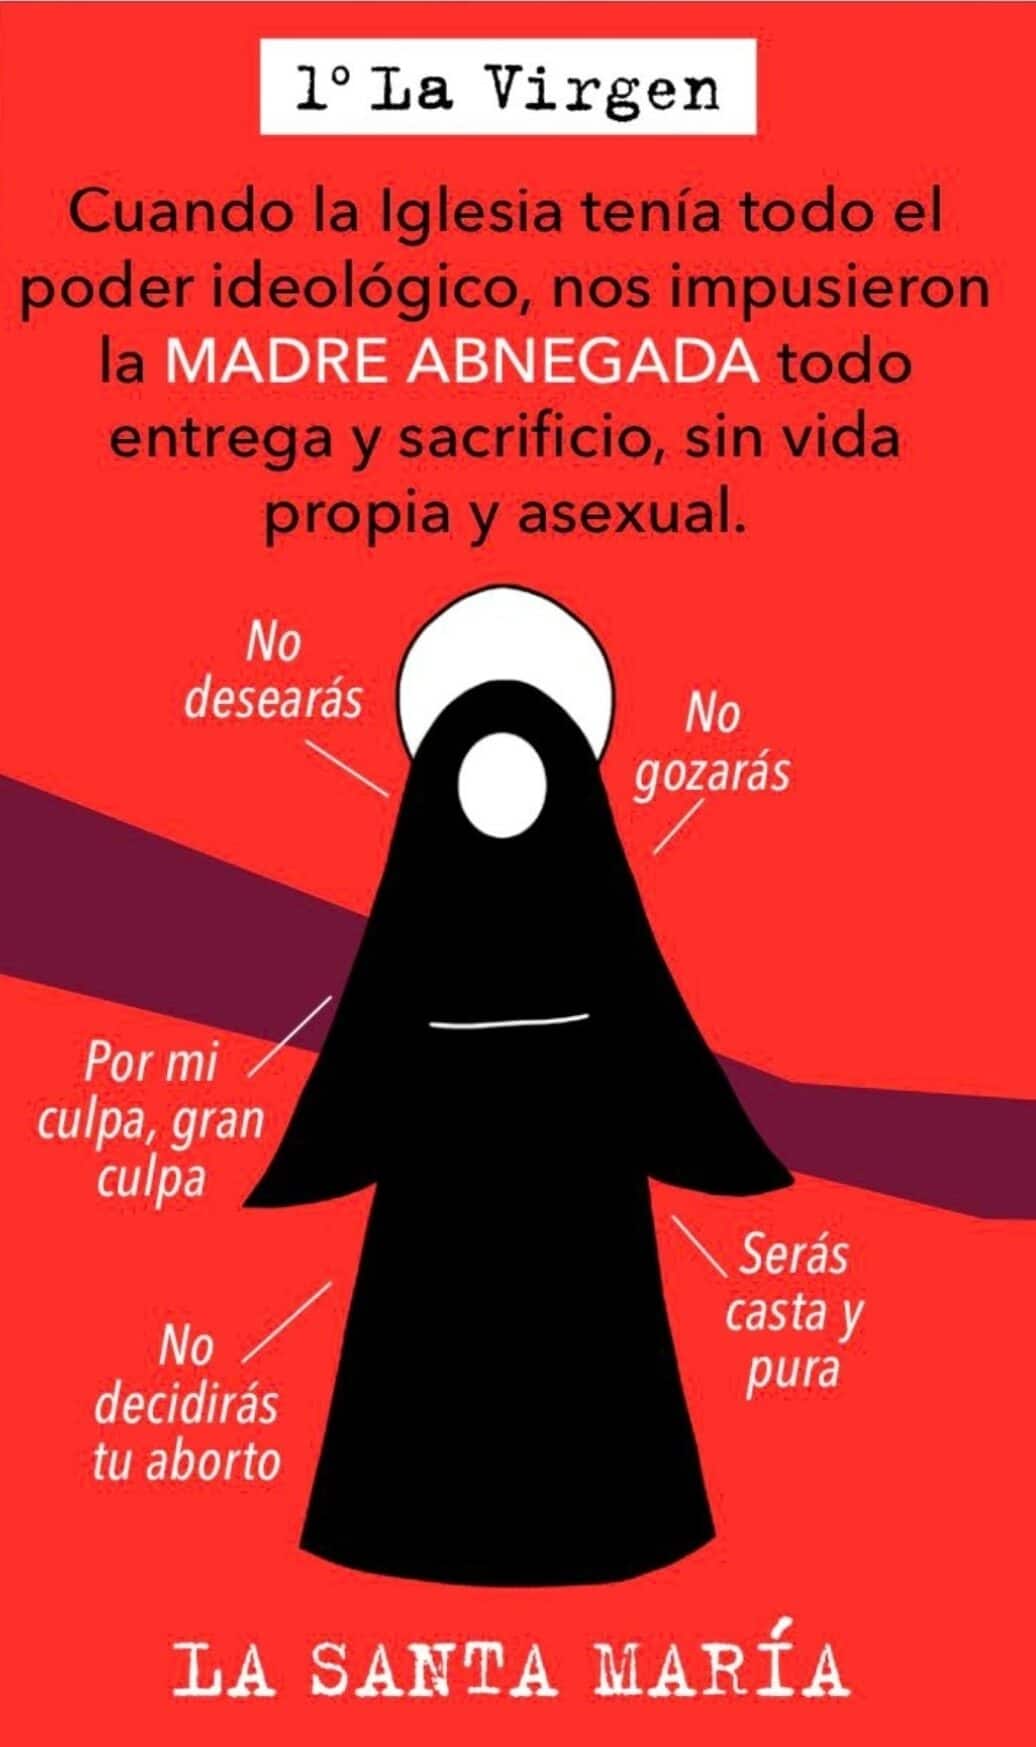 Guía sexual del Ministerio de Igualdad que reparte la alcaldesa de Getafe, se mofa de la Virgen María y la ética cristiana